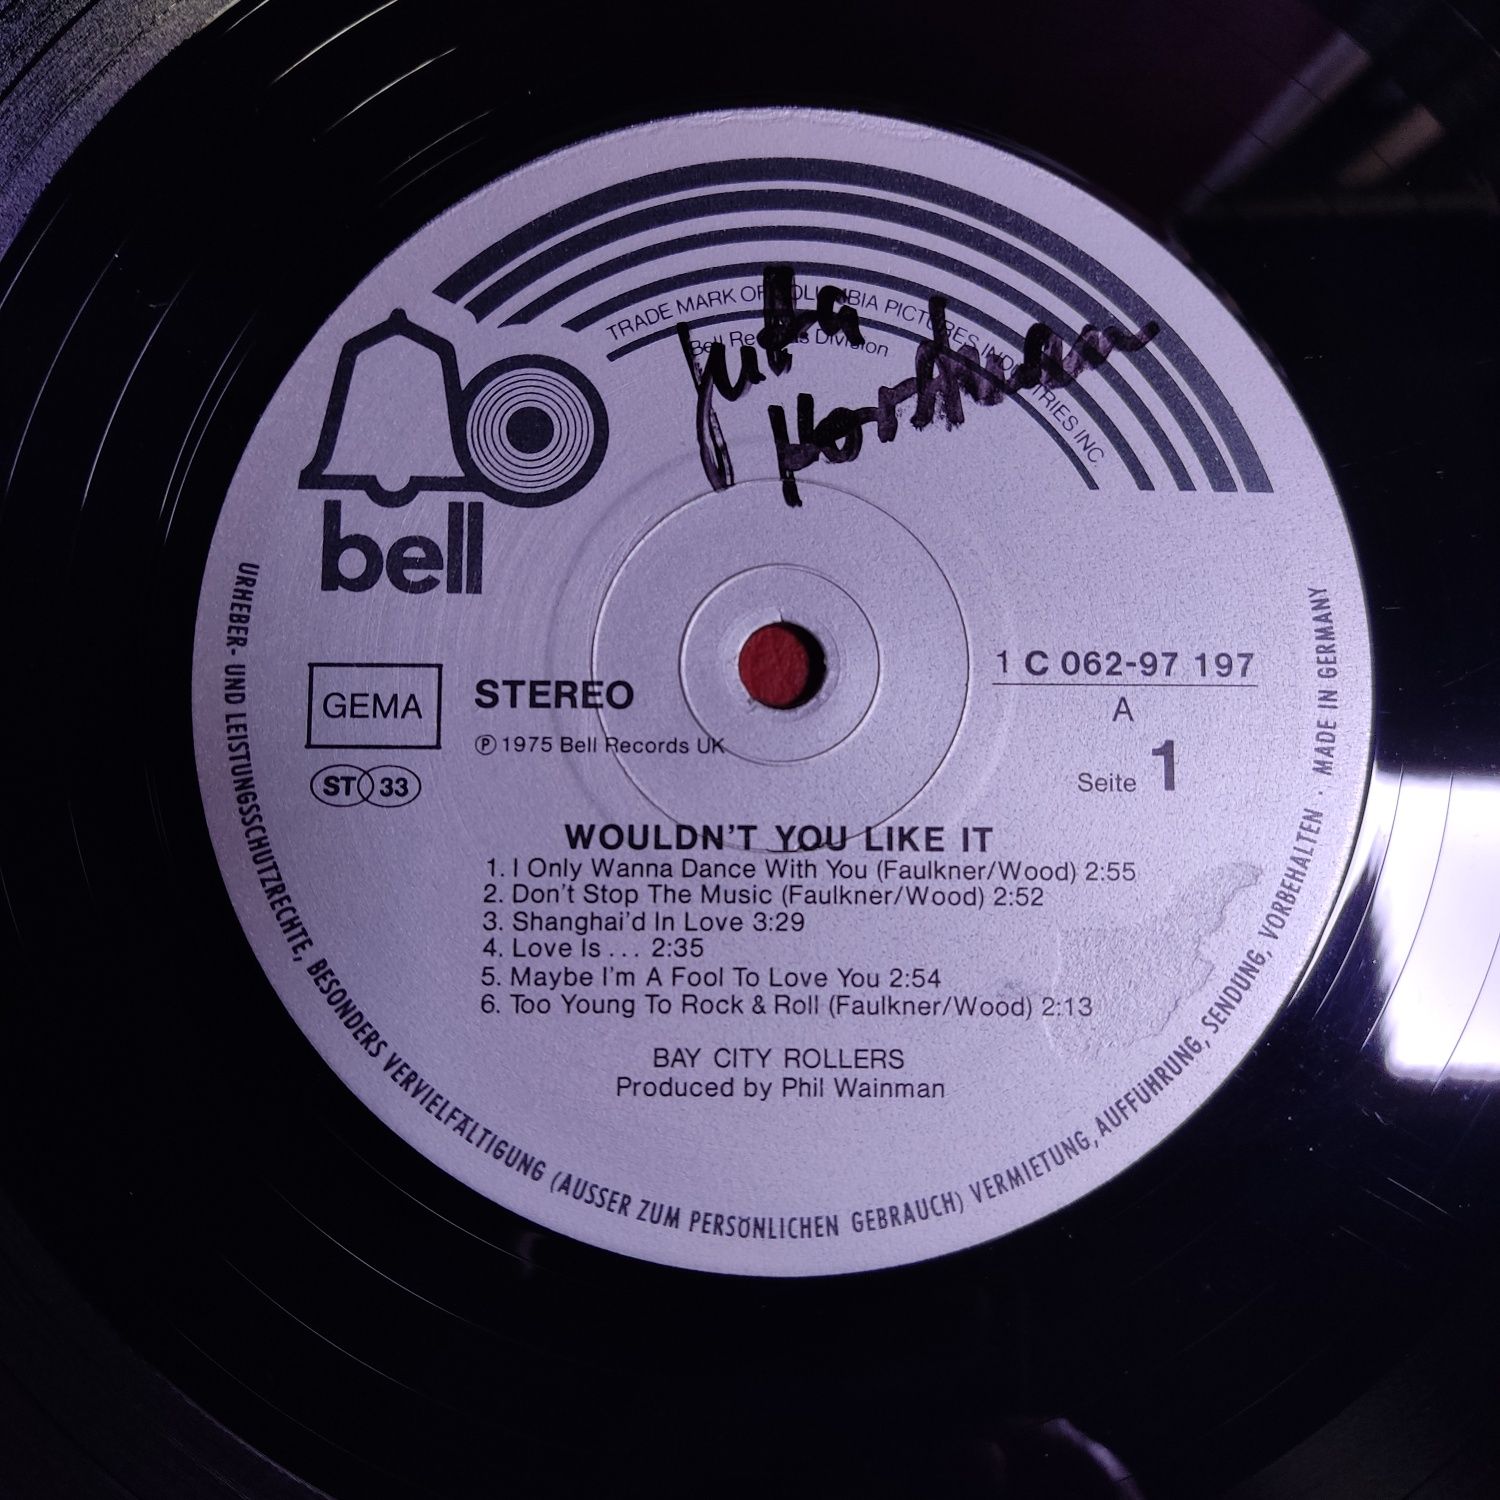 Bay City Rollers - Фірмові вінілові платівки.1975/76/77/79/81